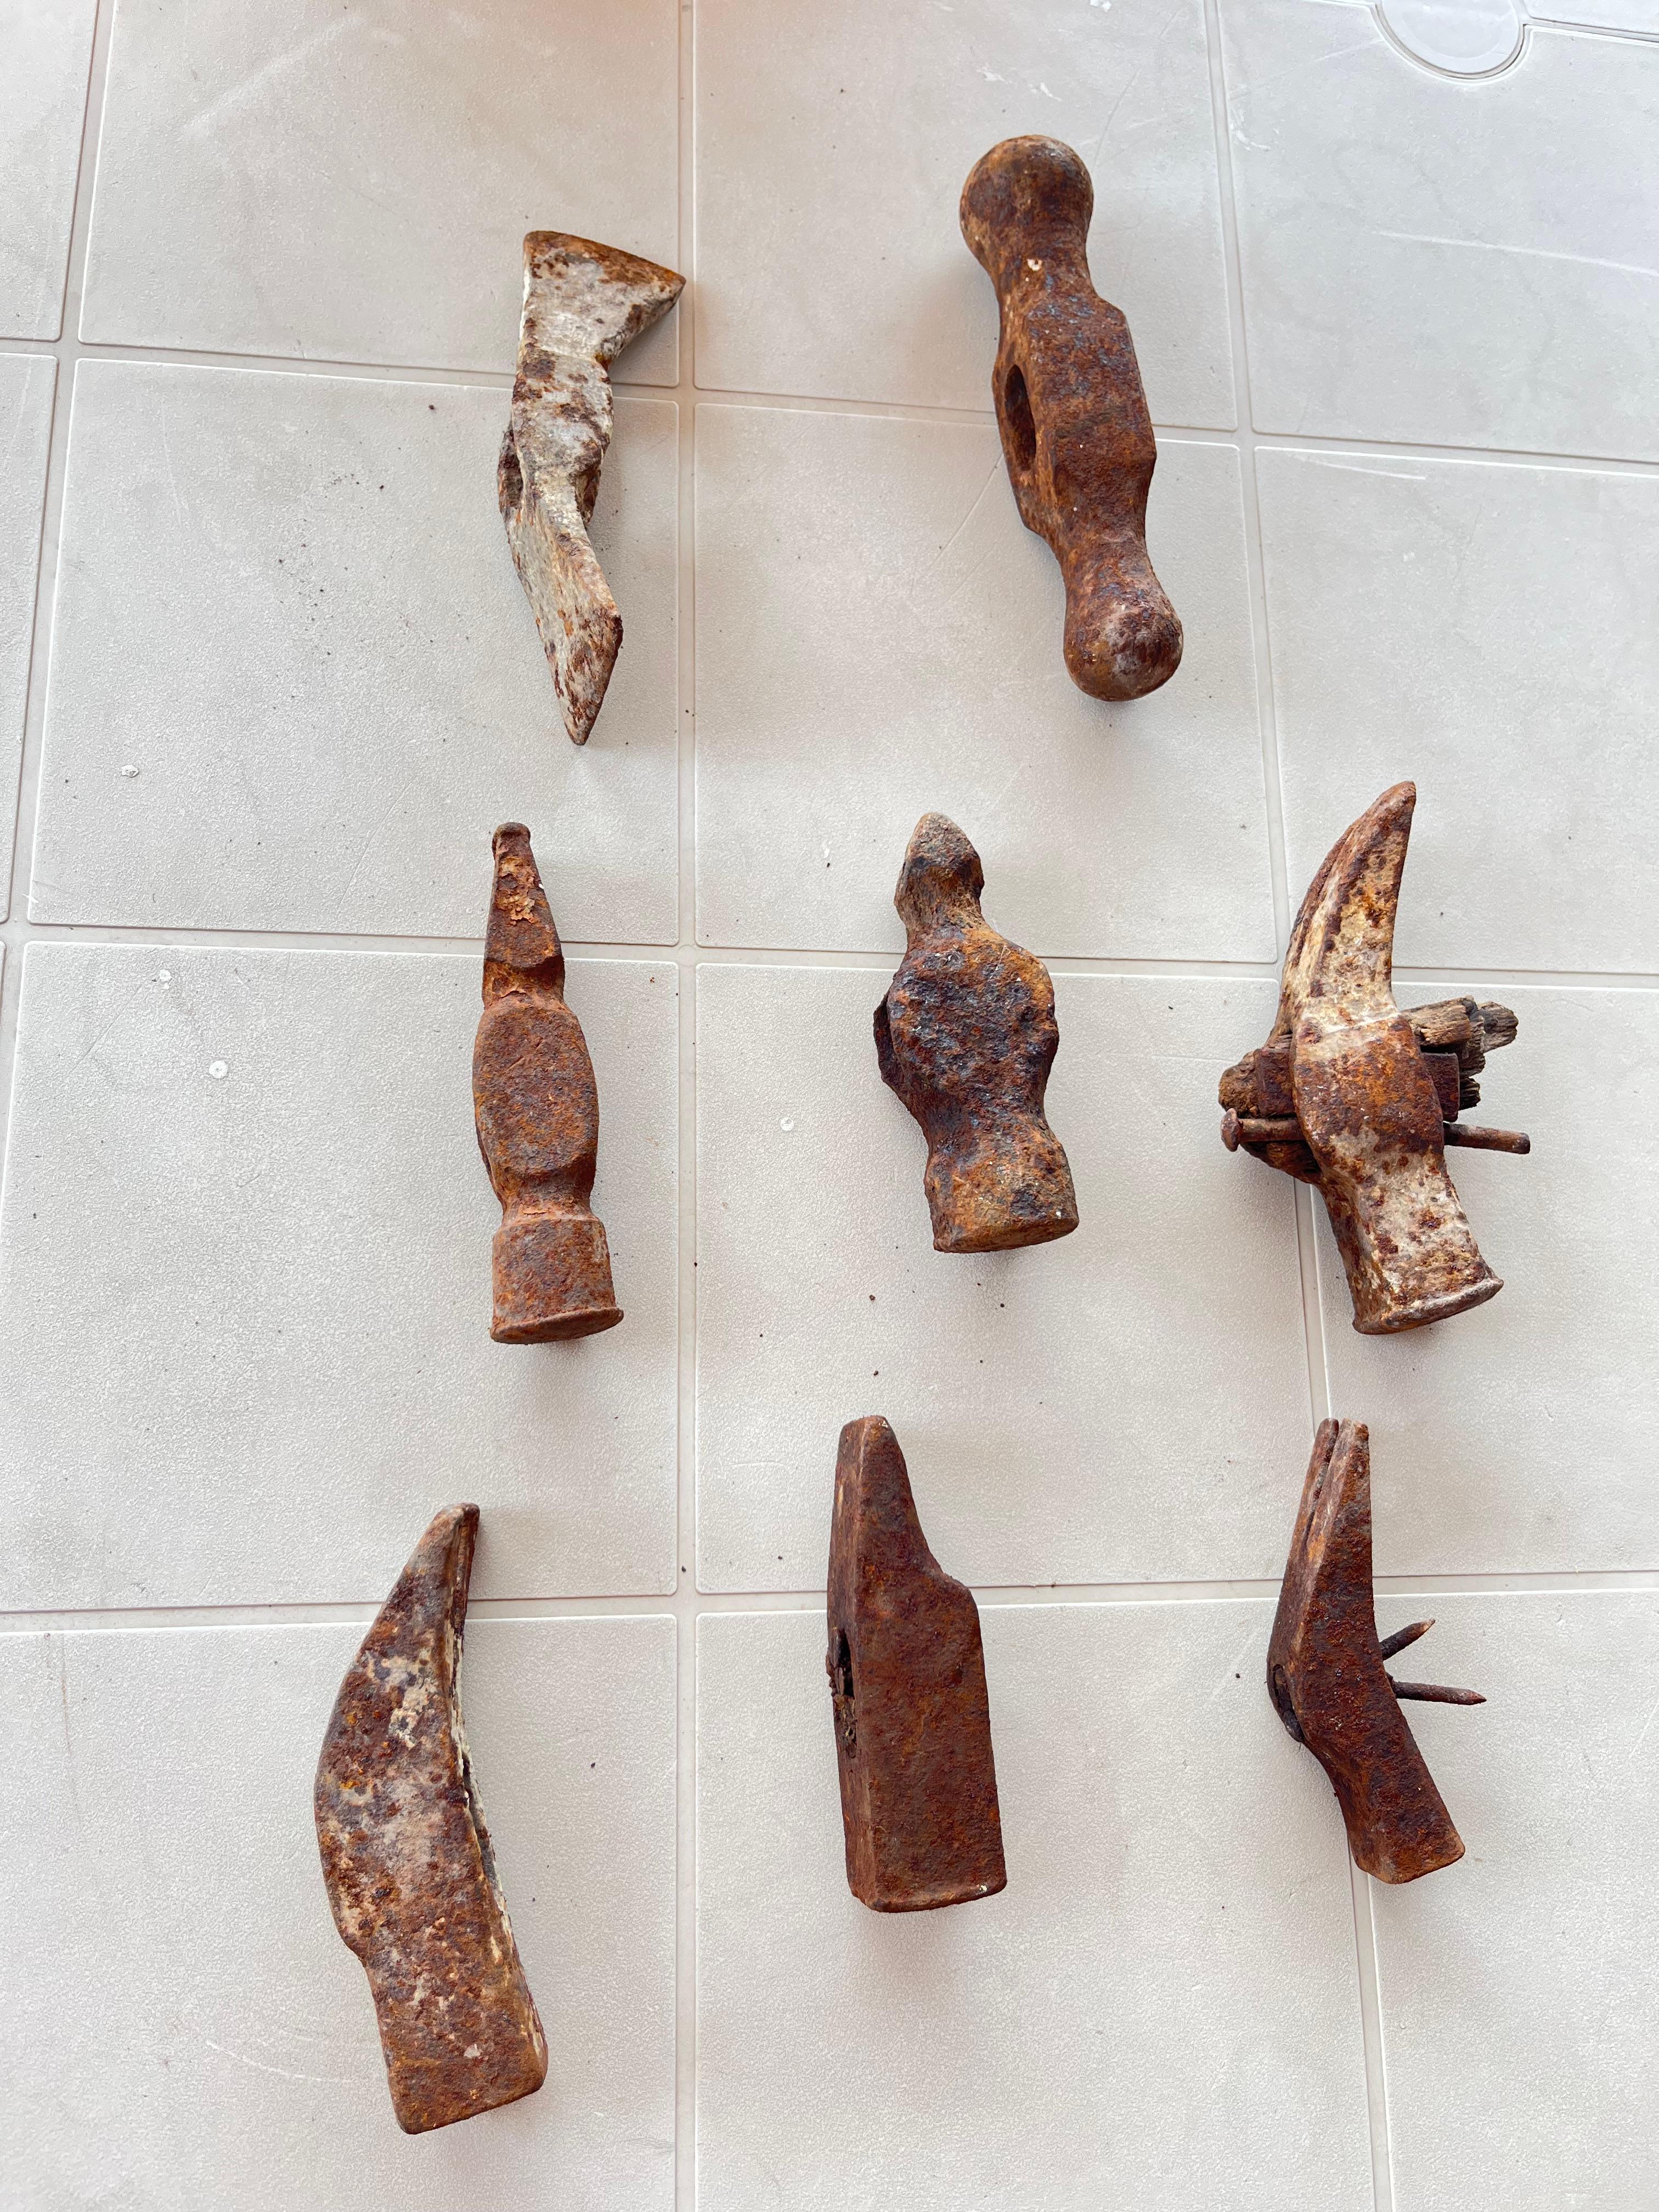 Huit marteaux de forgeron anciens, Italie, 1930
Trouvé dans une fabrique de sommiers qui appartenait à mon arrière-grand-père. Les poignées en bois doivent être ajoutées.